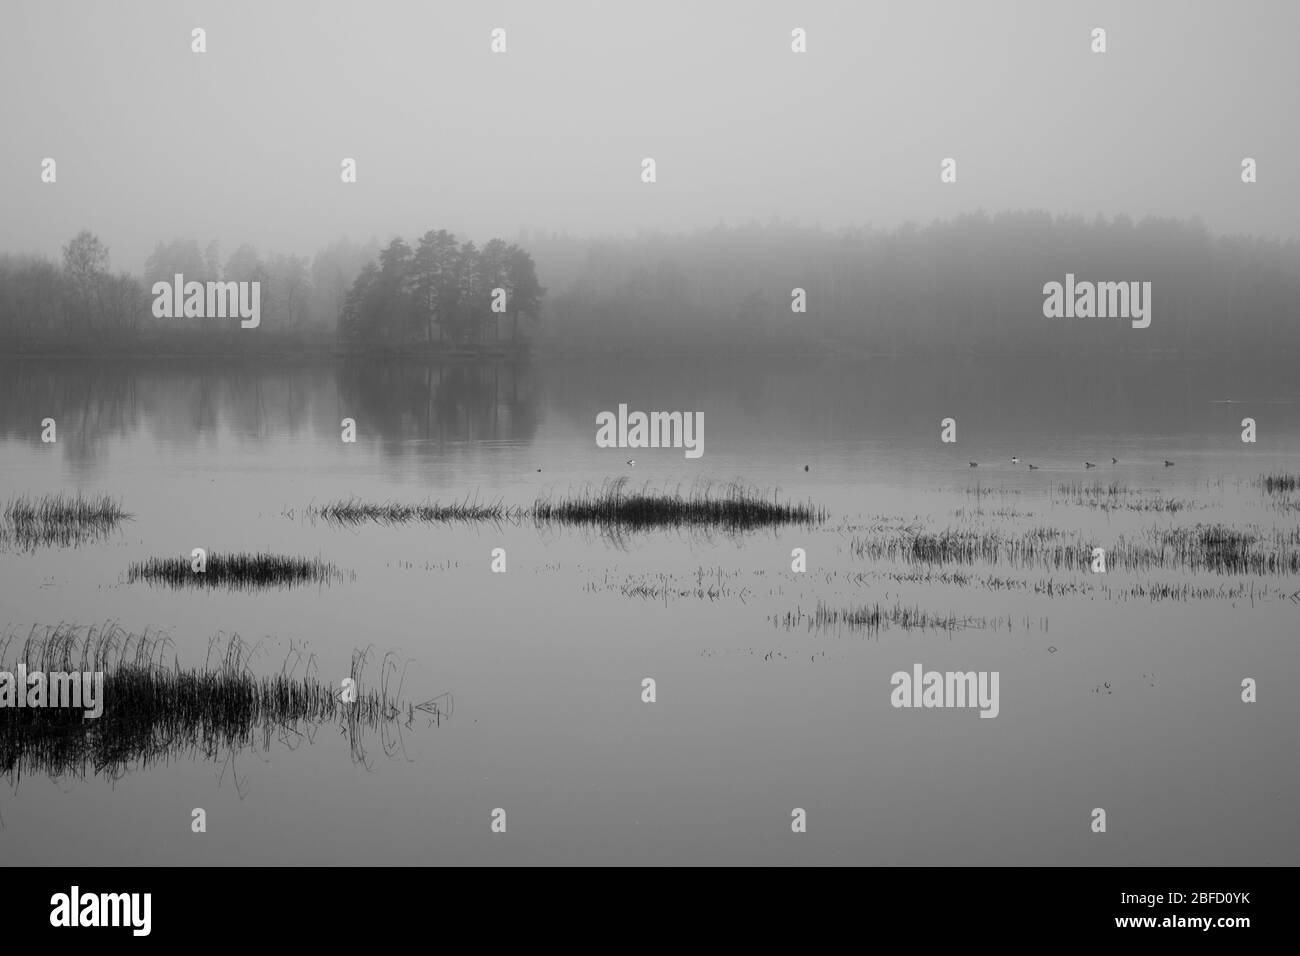 Una scena bianca e nera da un fiume in un giorno grigio nebbia con canne secche morte in primo piano e altre rive scomparire nella nebbia Foto Stock